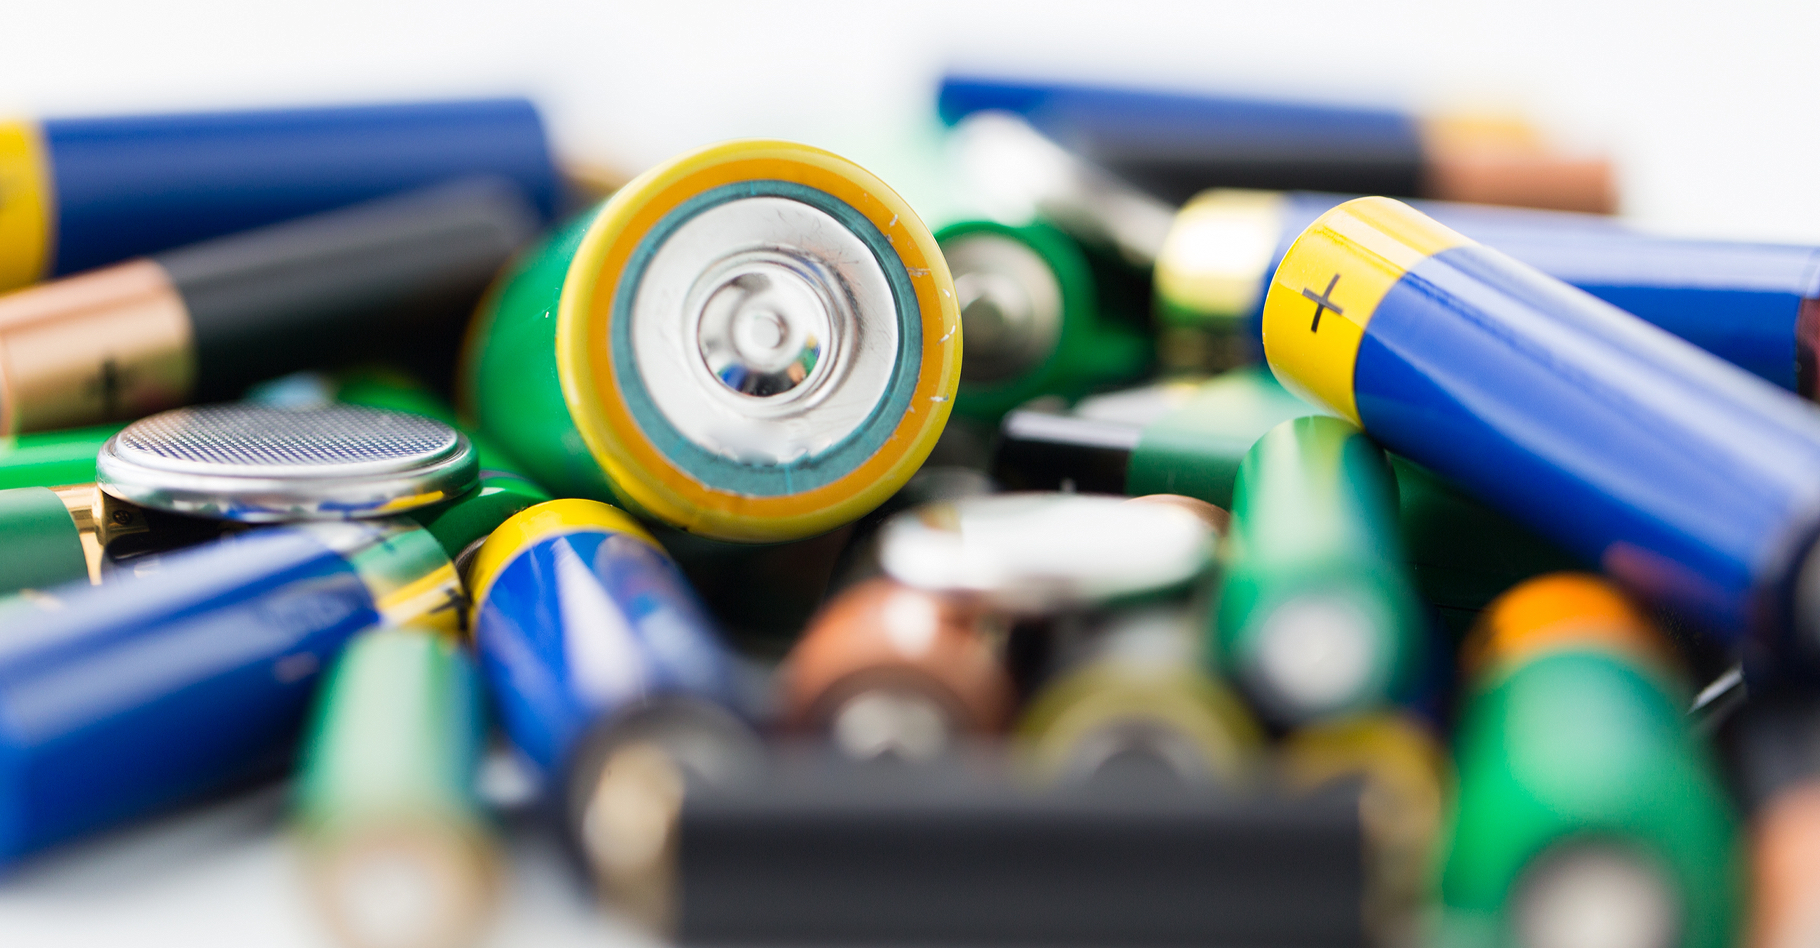 La cathode d’une pile est le siège de réactions de réduction. © Syda Productions, Shutterstock